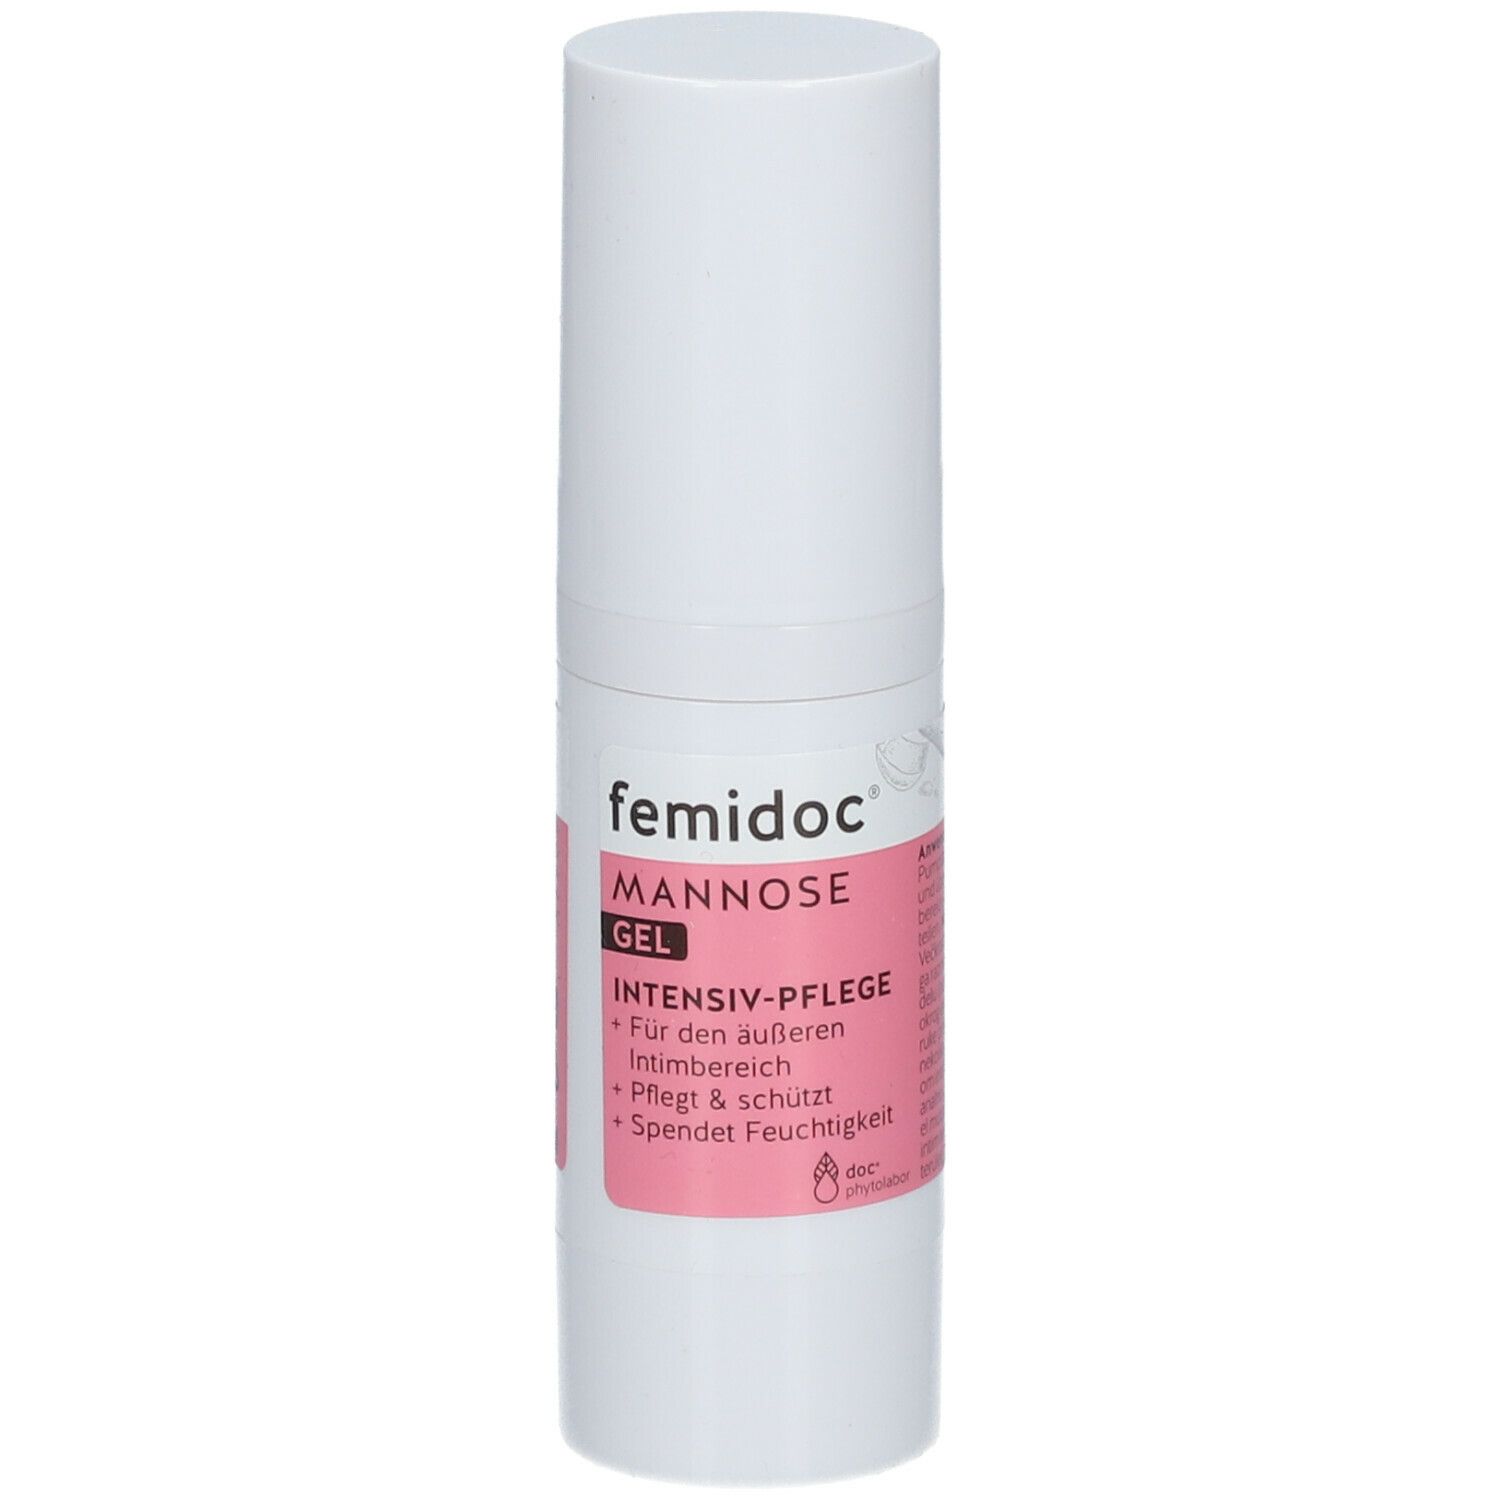 femidoc® Mannose Gel